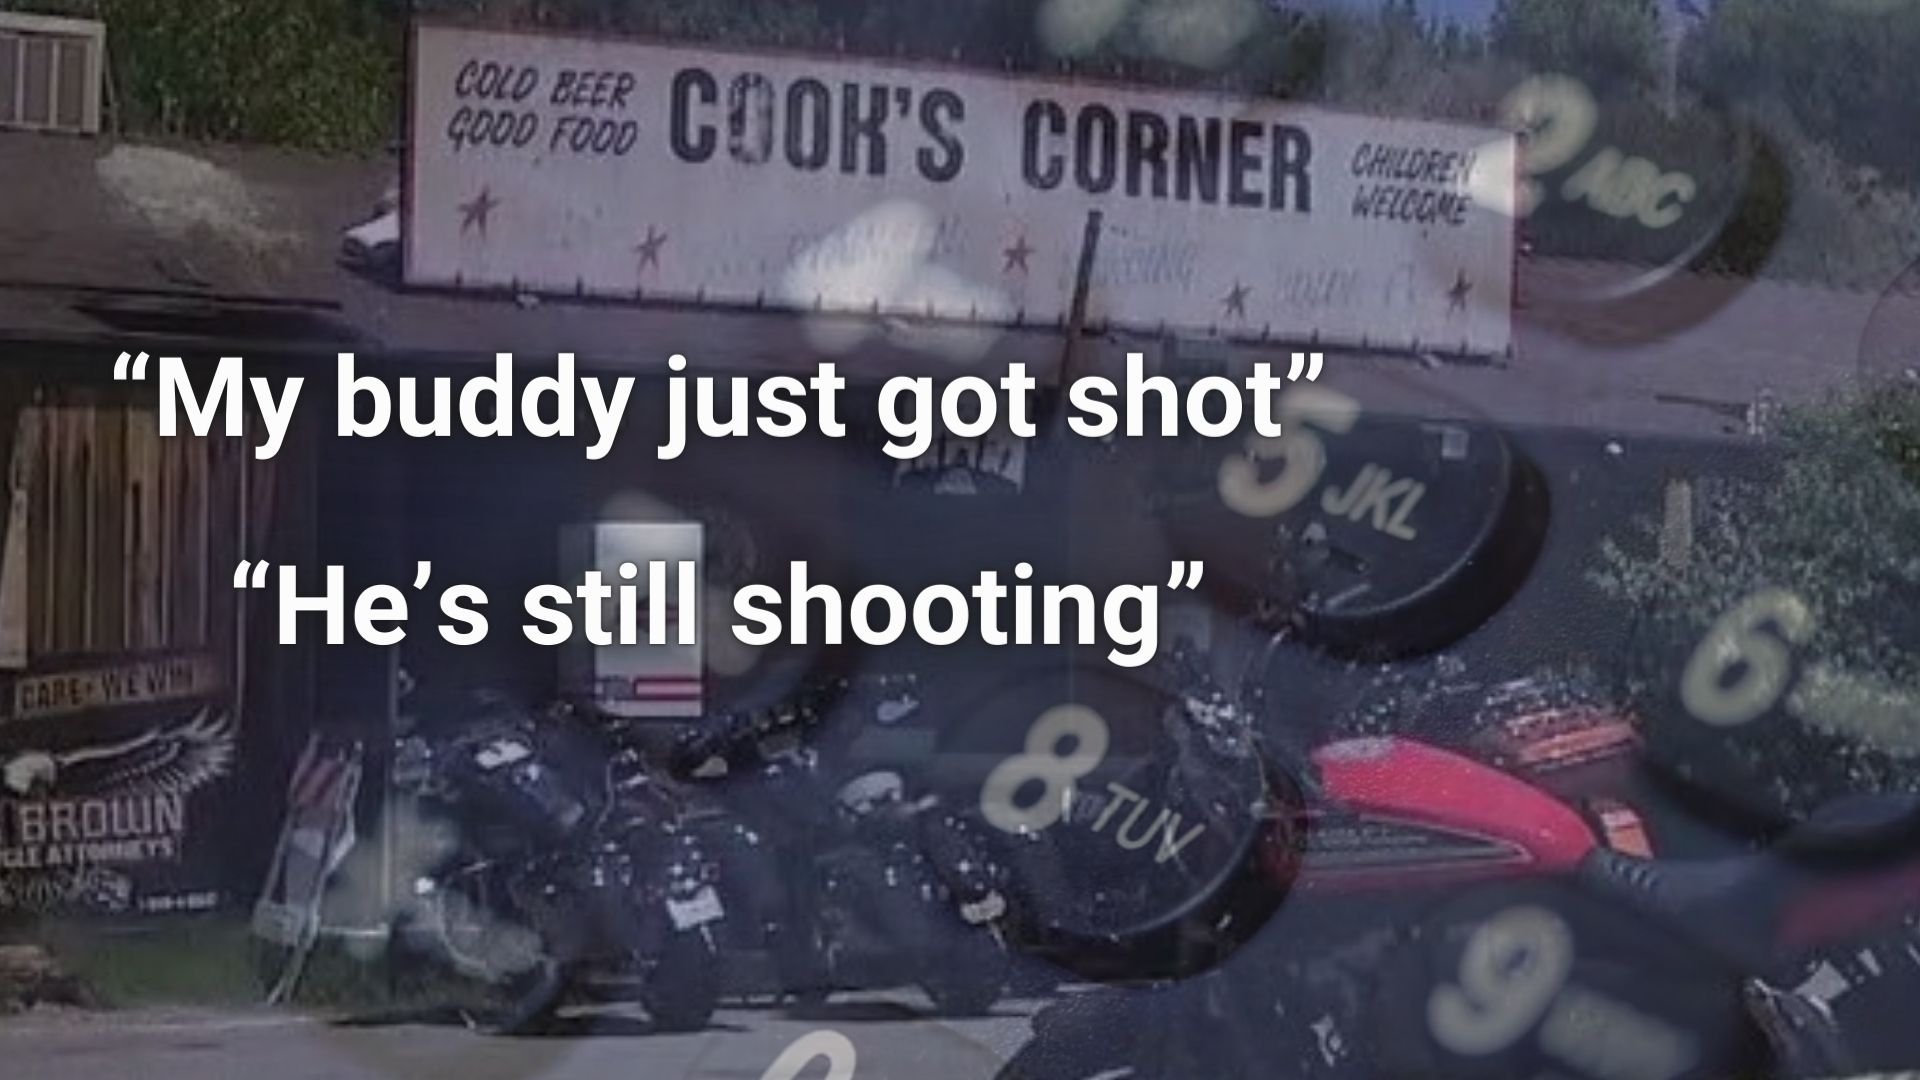 911 audio released in Cook's Corner shooting